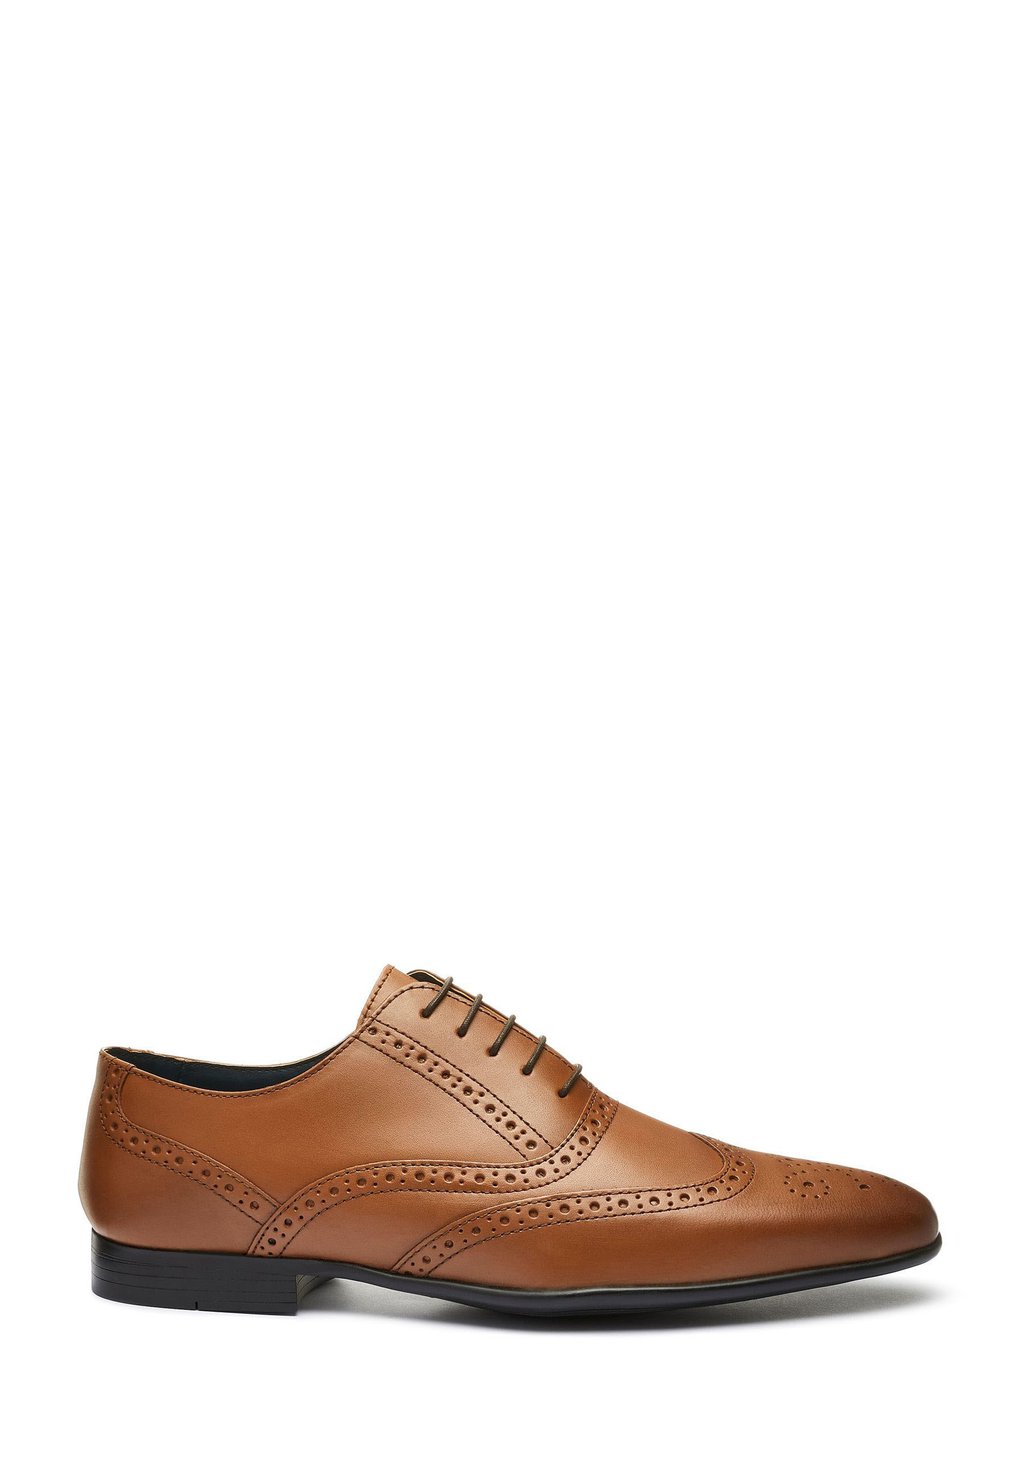 Элегантные туфли на шнуровке Oxford Brogue Wide Fit Next, цвет tan brown